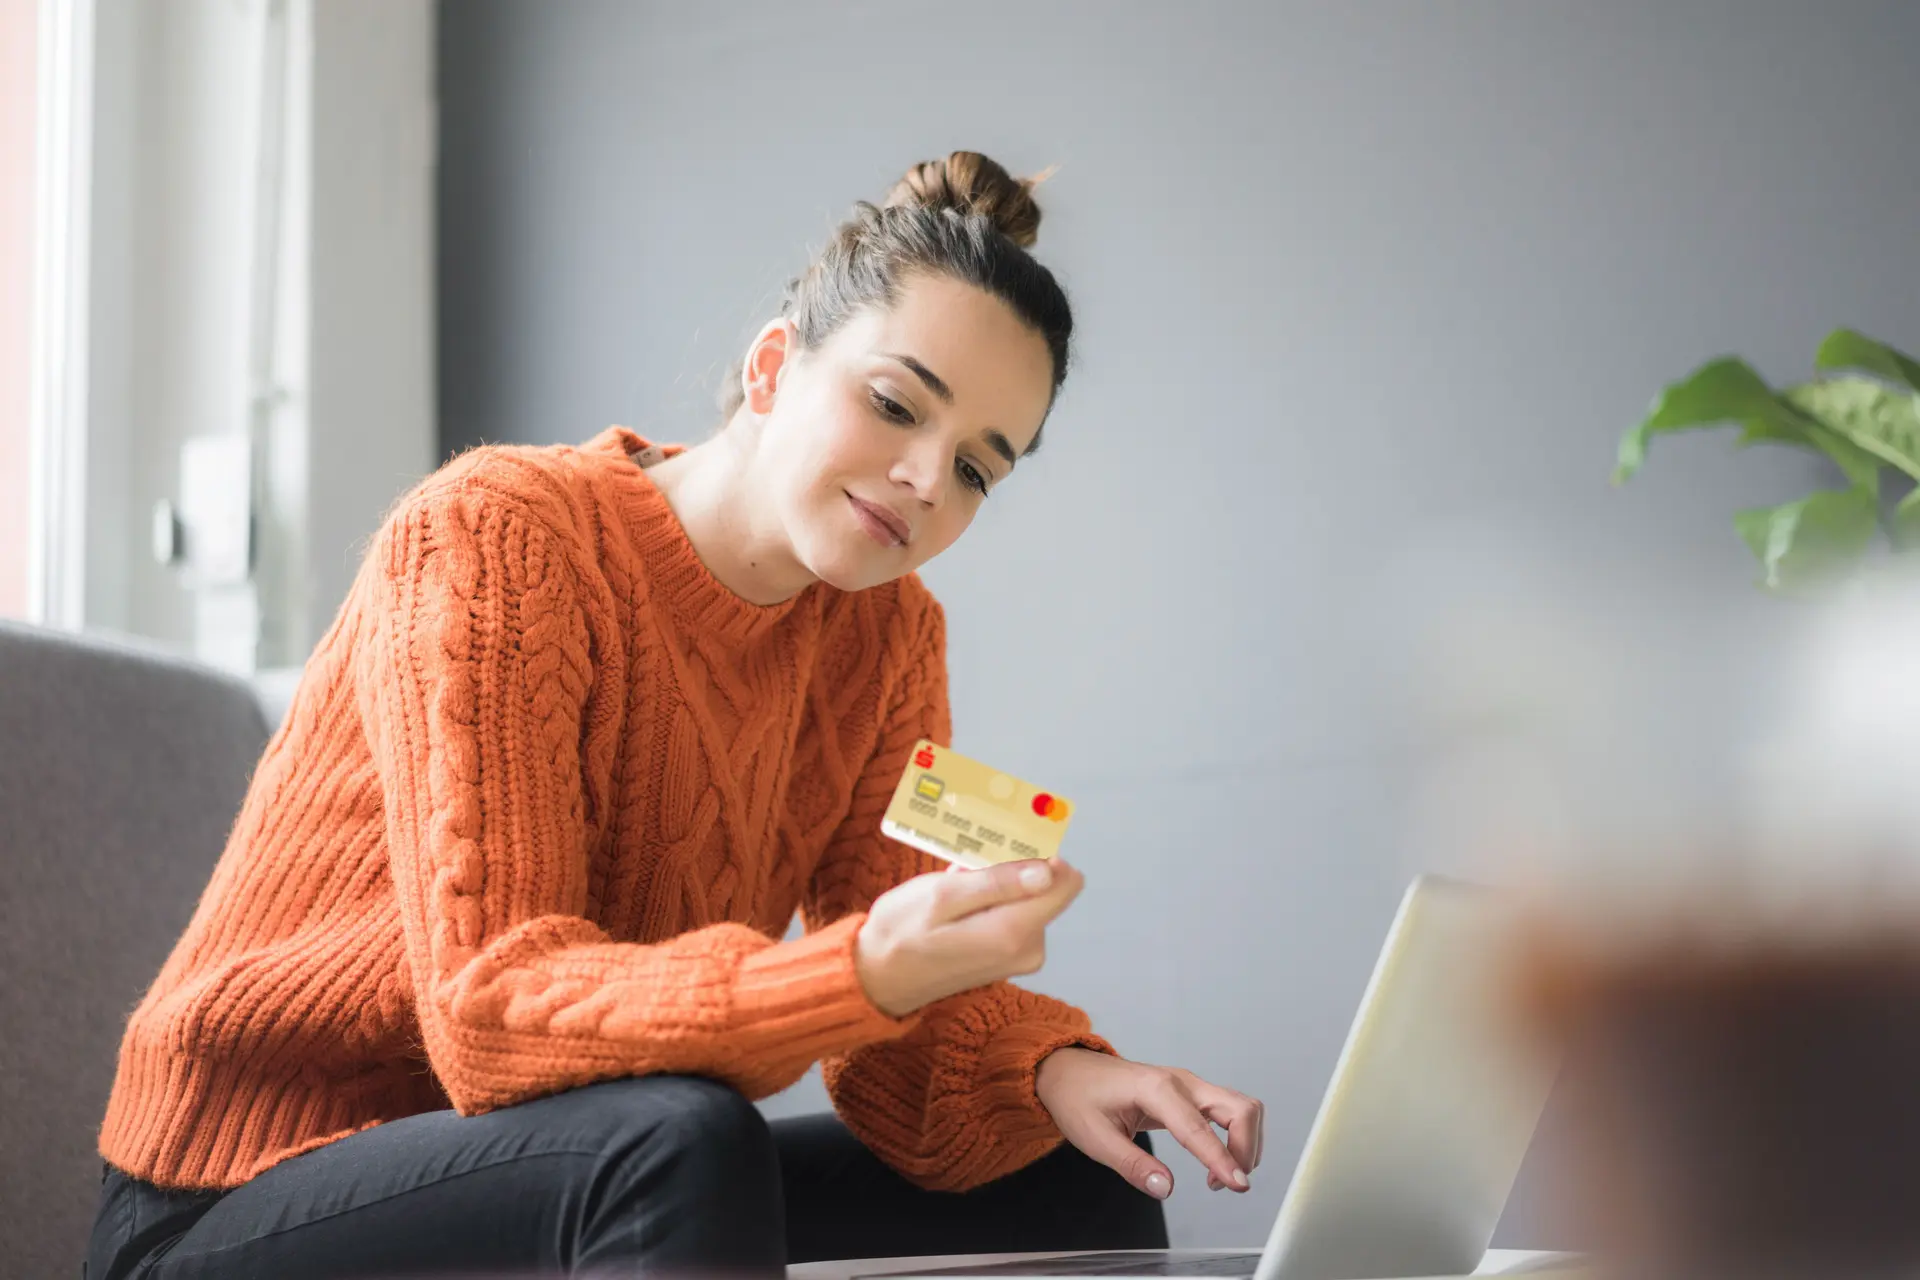 Eine junge Frau in orangenen Pulli sitzt vor einem Laptop. In der Hand hat sie eine goldene Kreditkarte. Sie schaut auf die Rückseite der Kreditkarte.